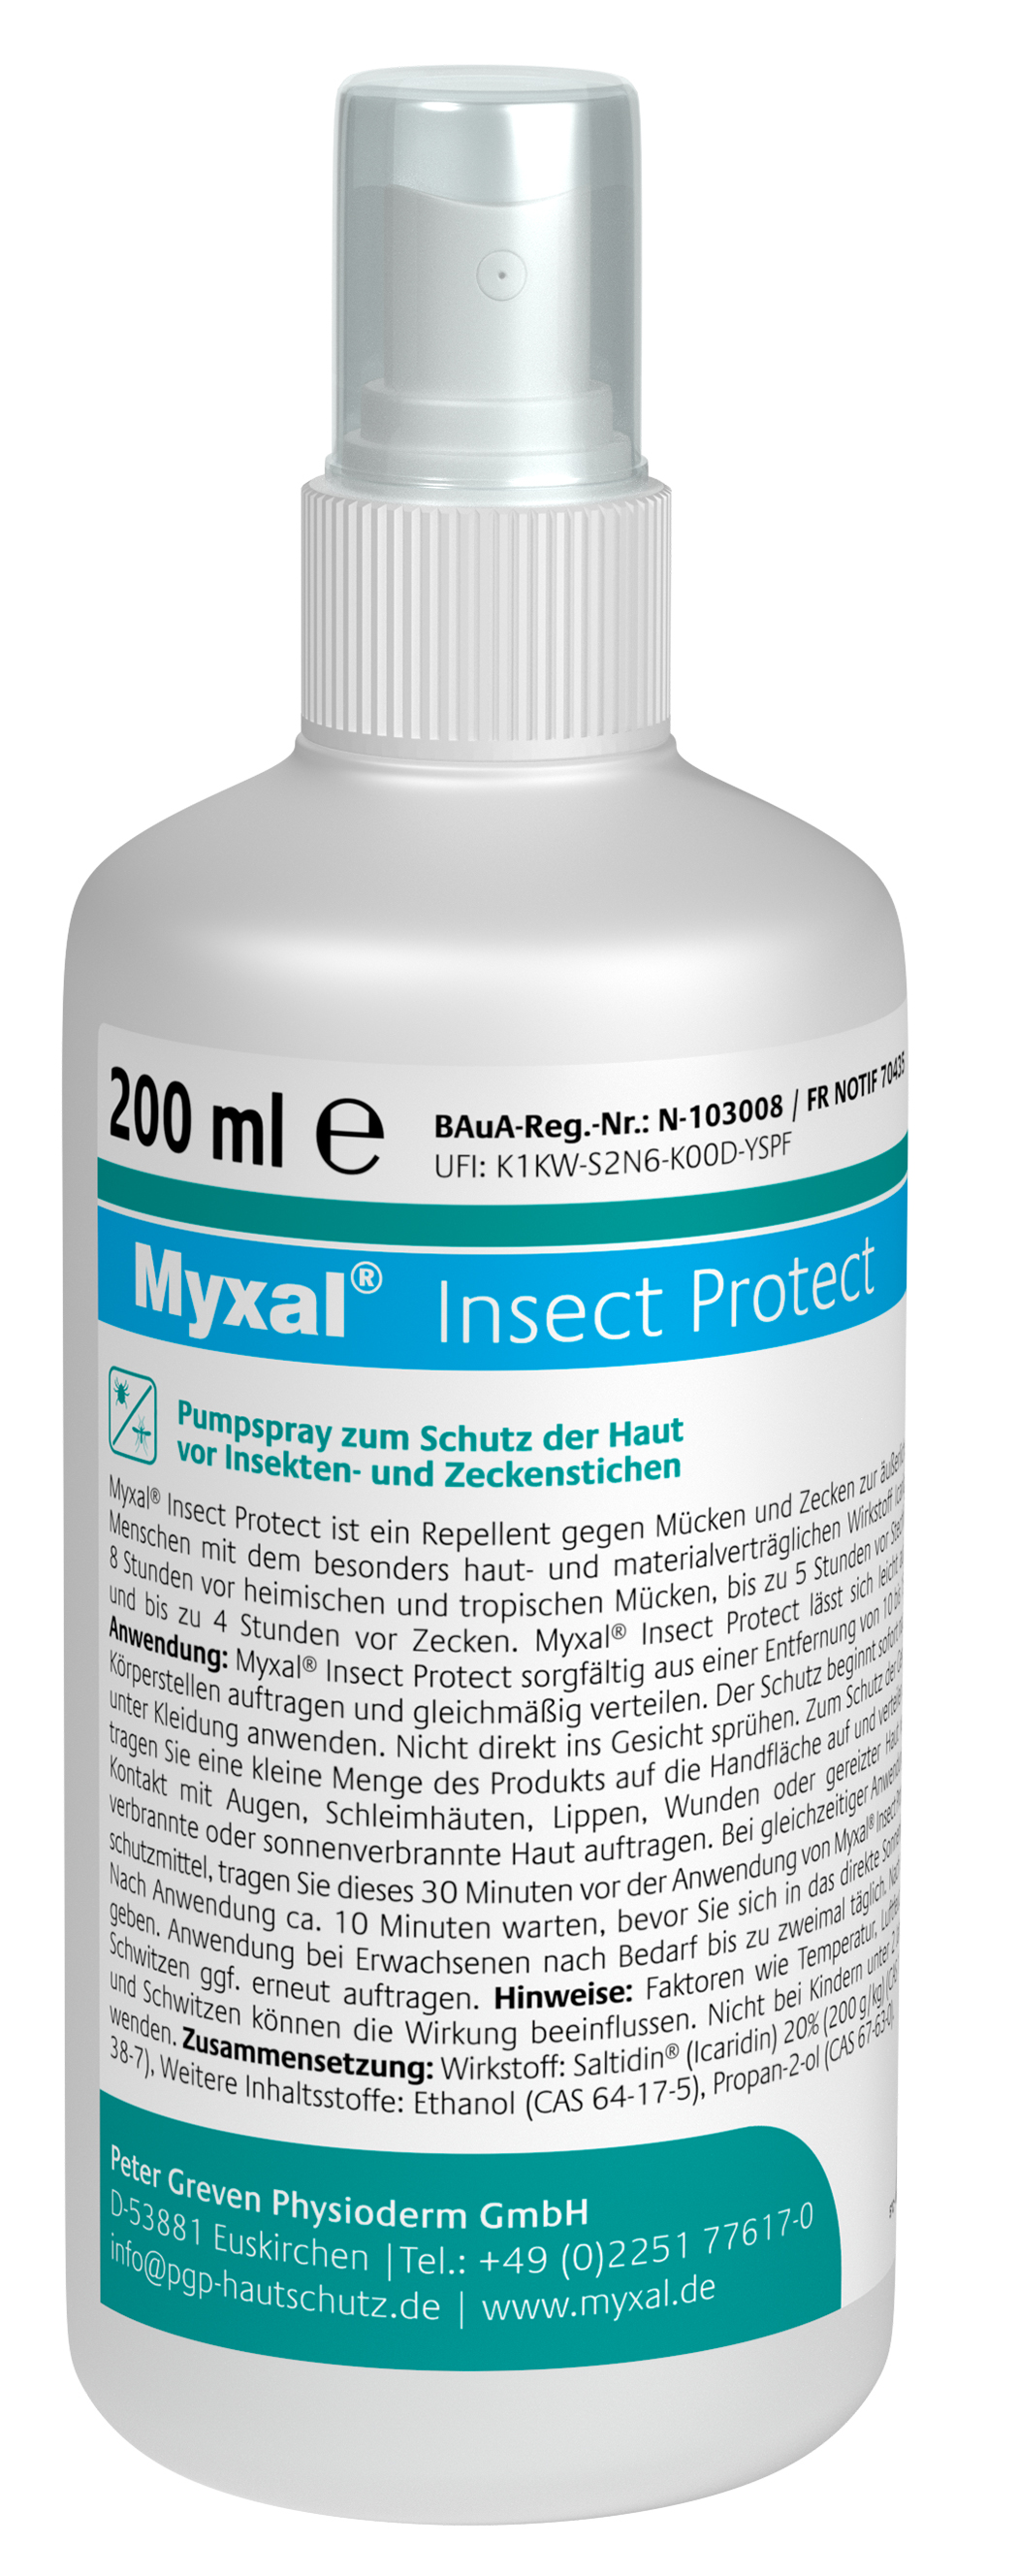 Myxal Mücken- und Zeckenspray Insect Protect